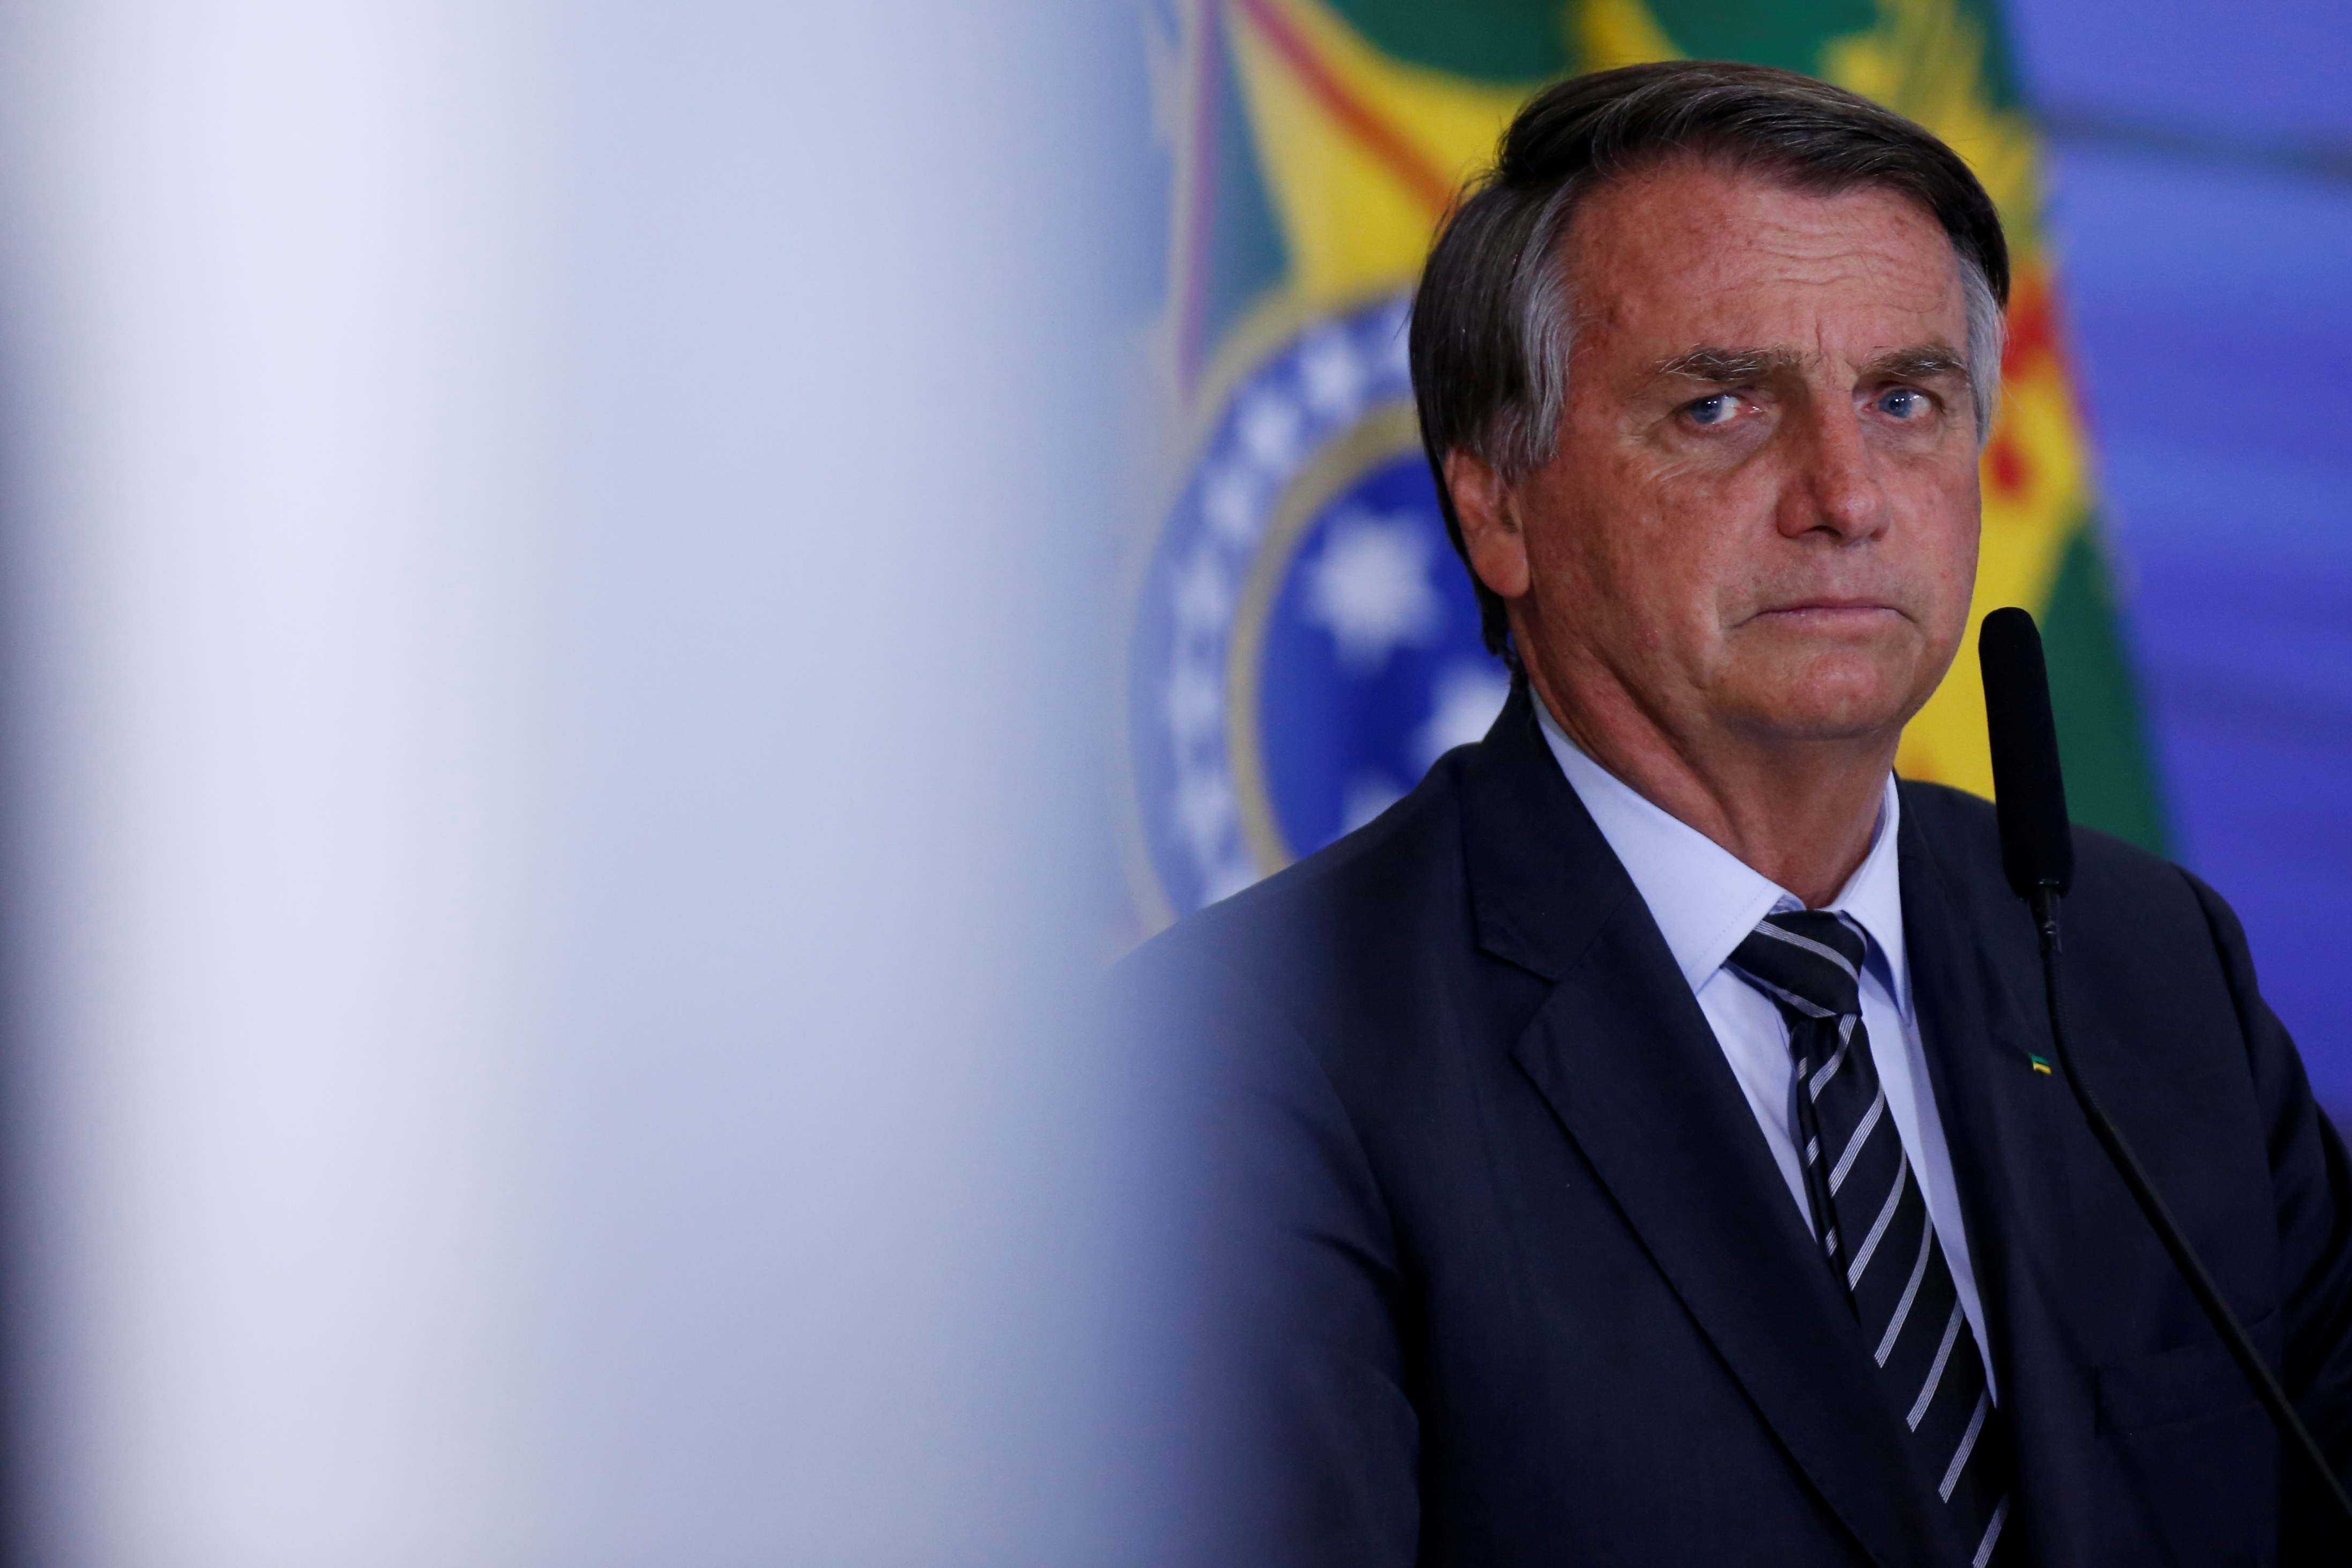 Brazil's President Bolsonaro looks on during a ceremony in Brasilia